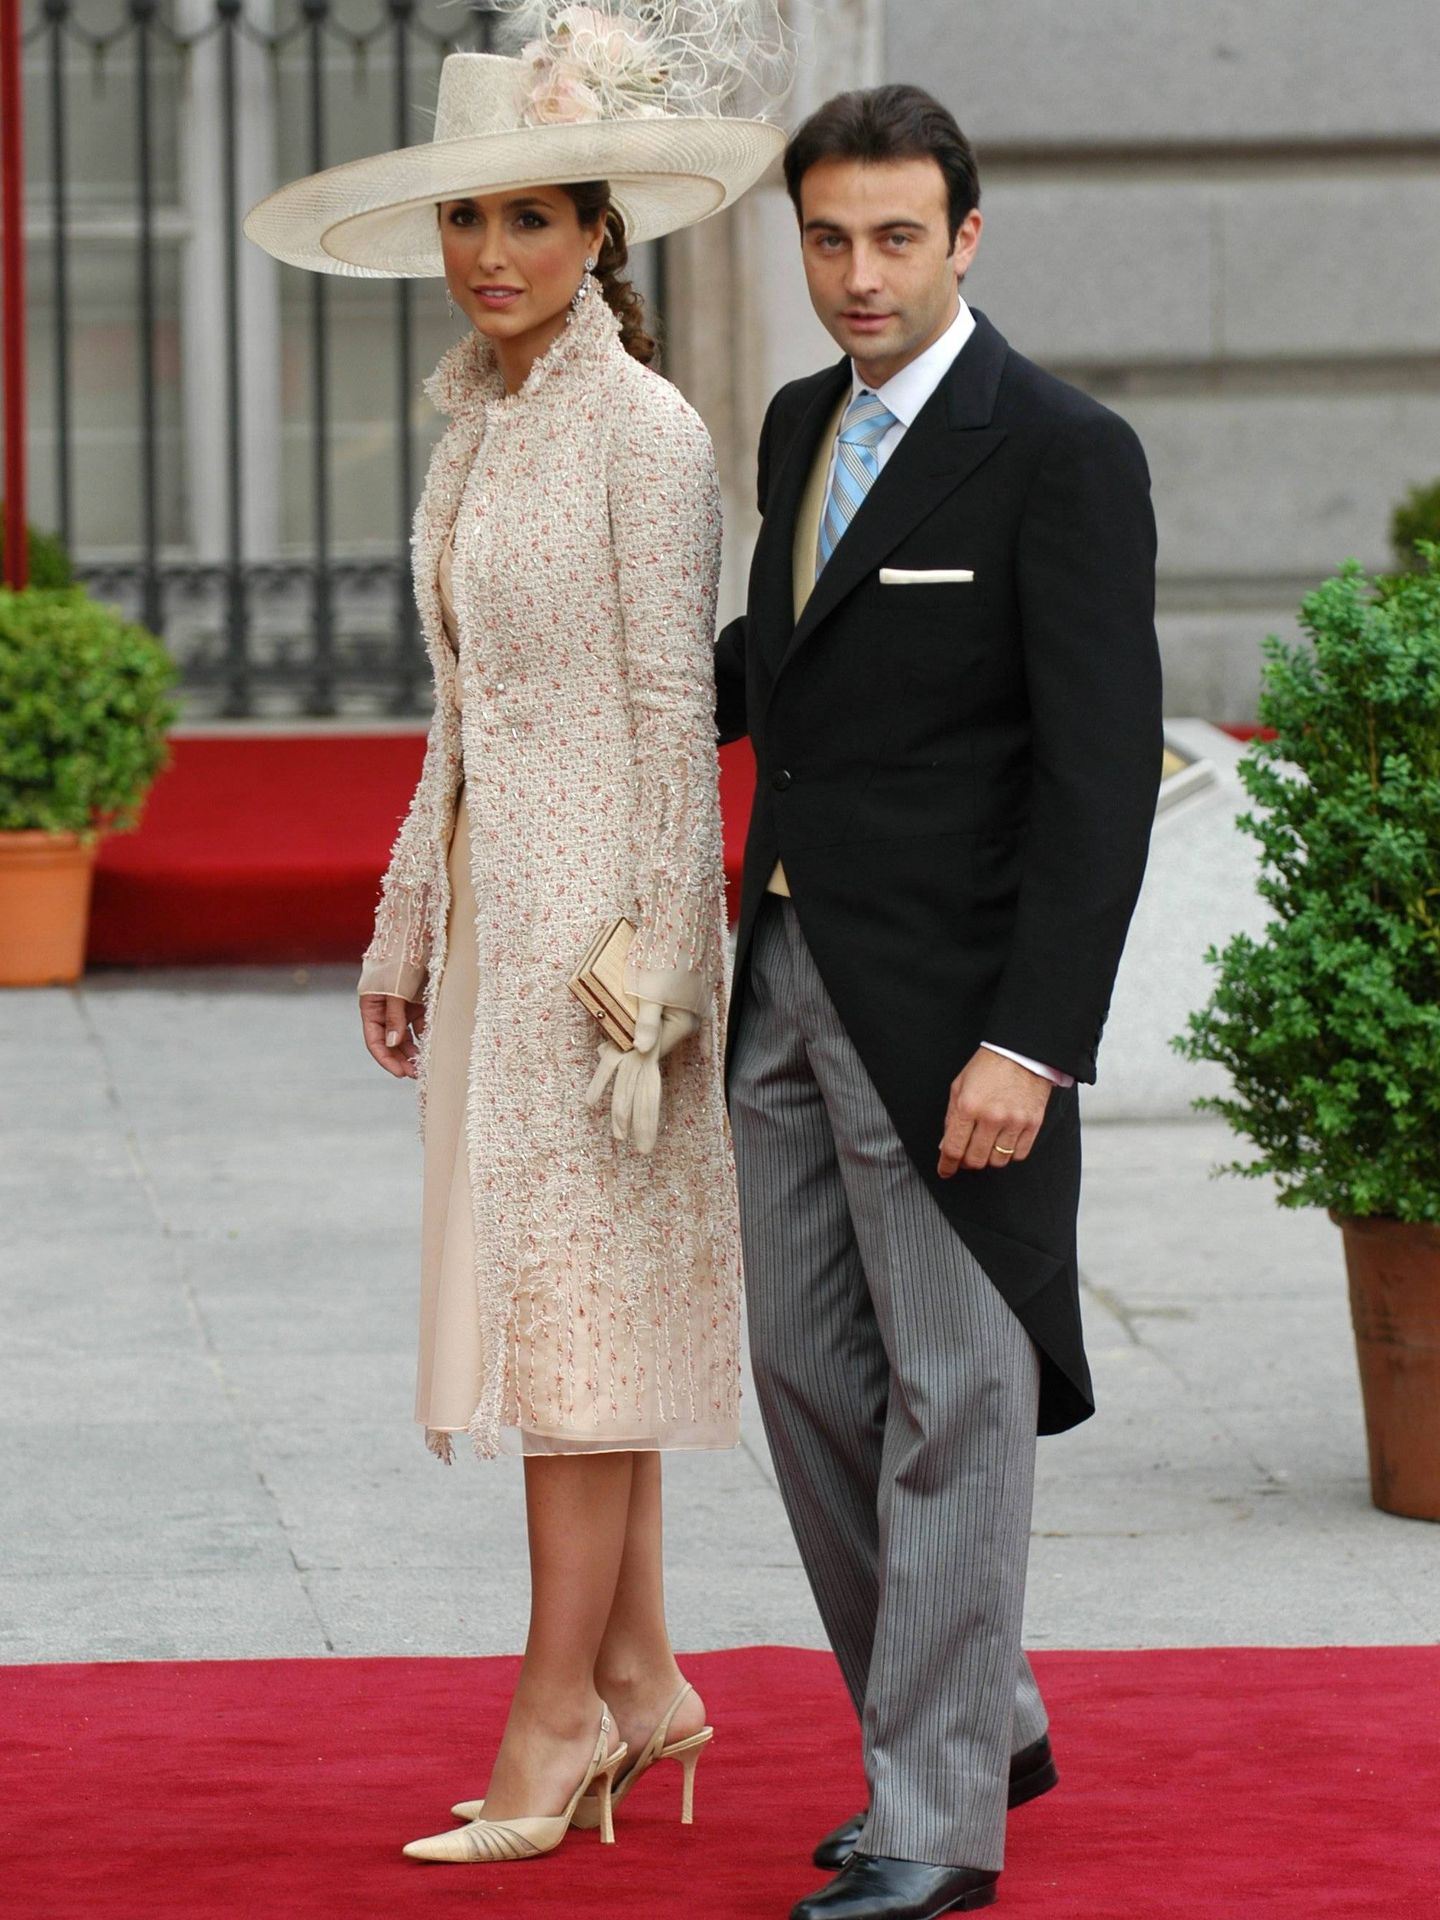 Paloma Cuevas y Enrique Ponce, en la boda de los Príncipes de Asturias. (Cordon Press)